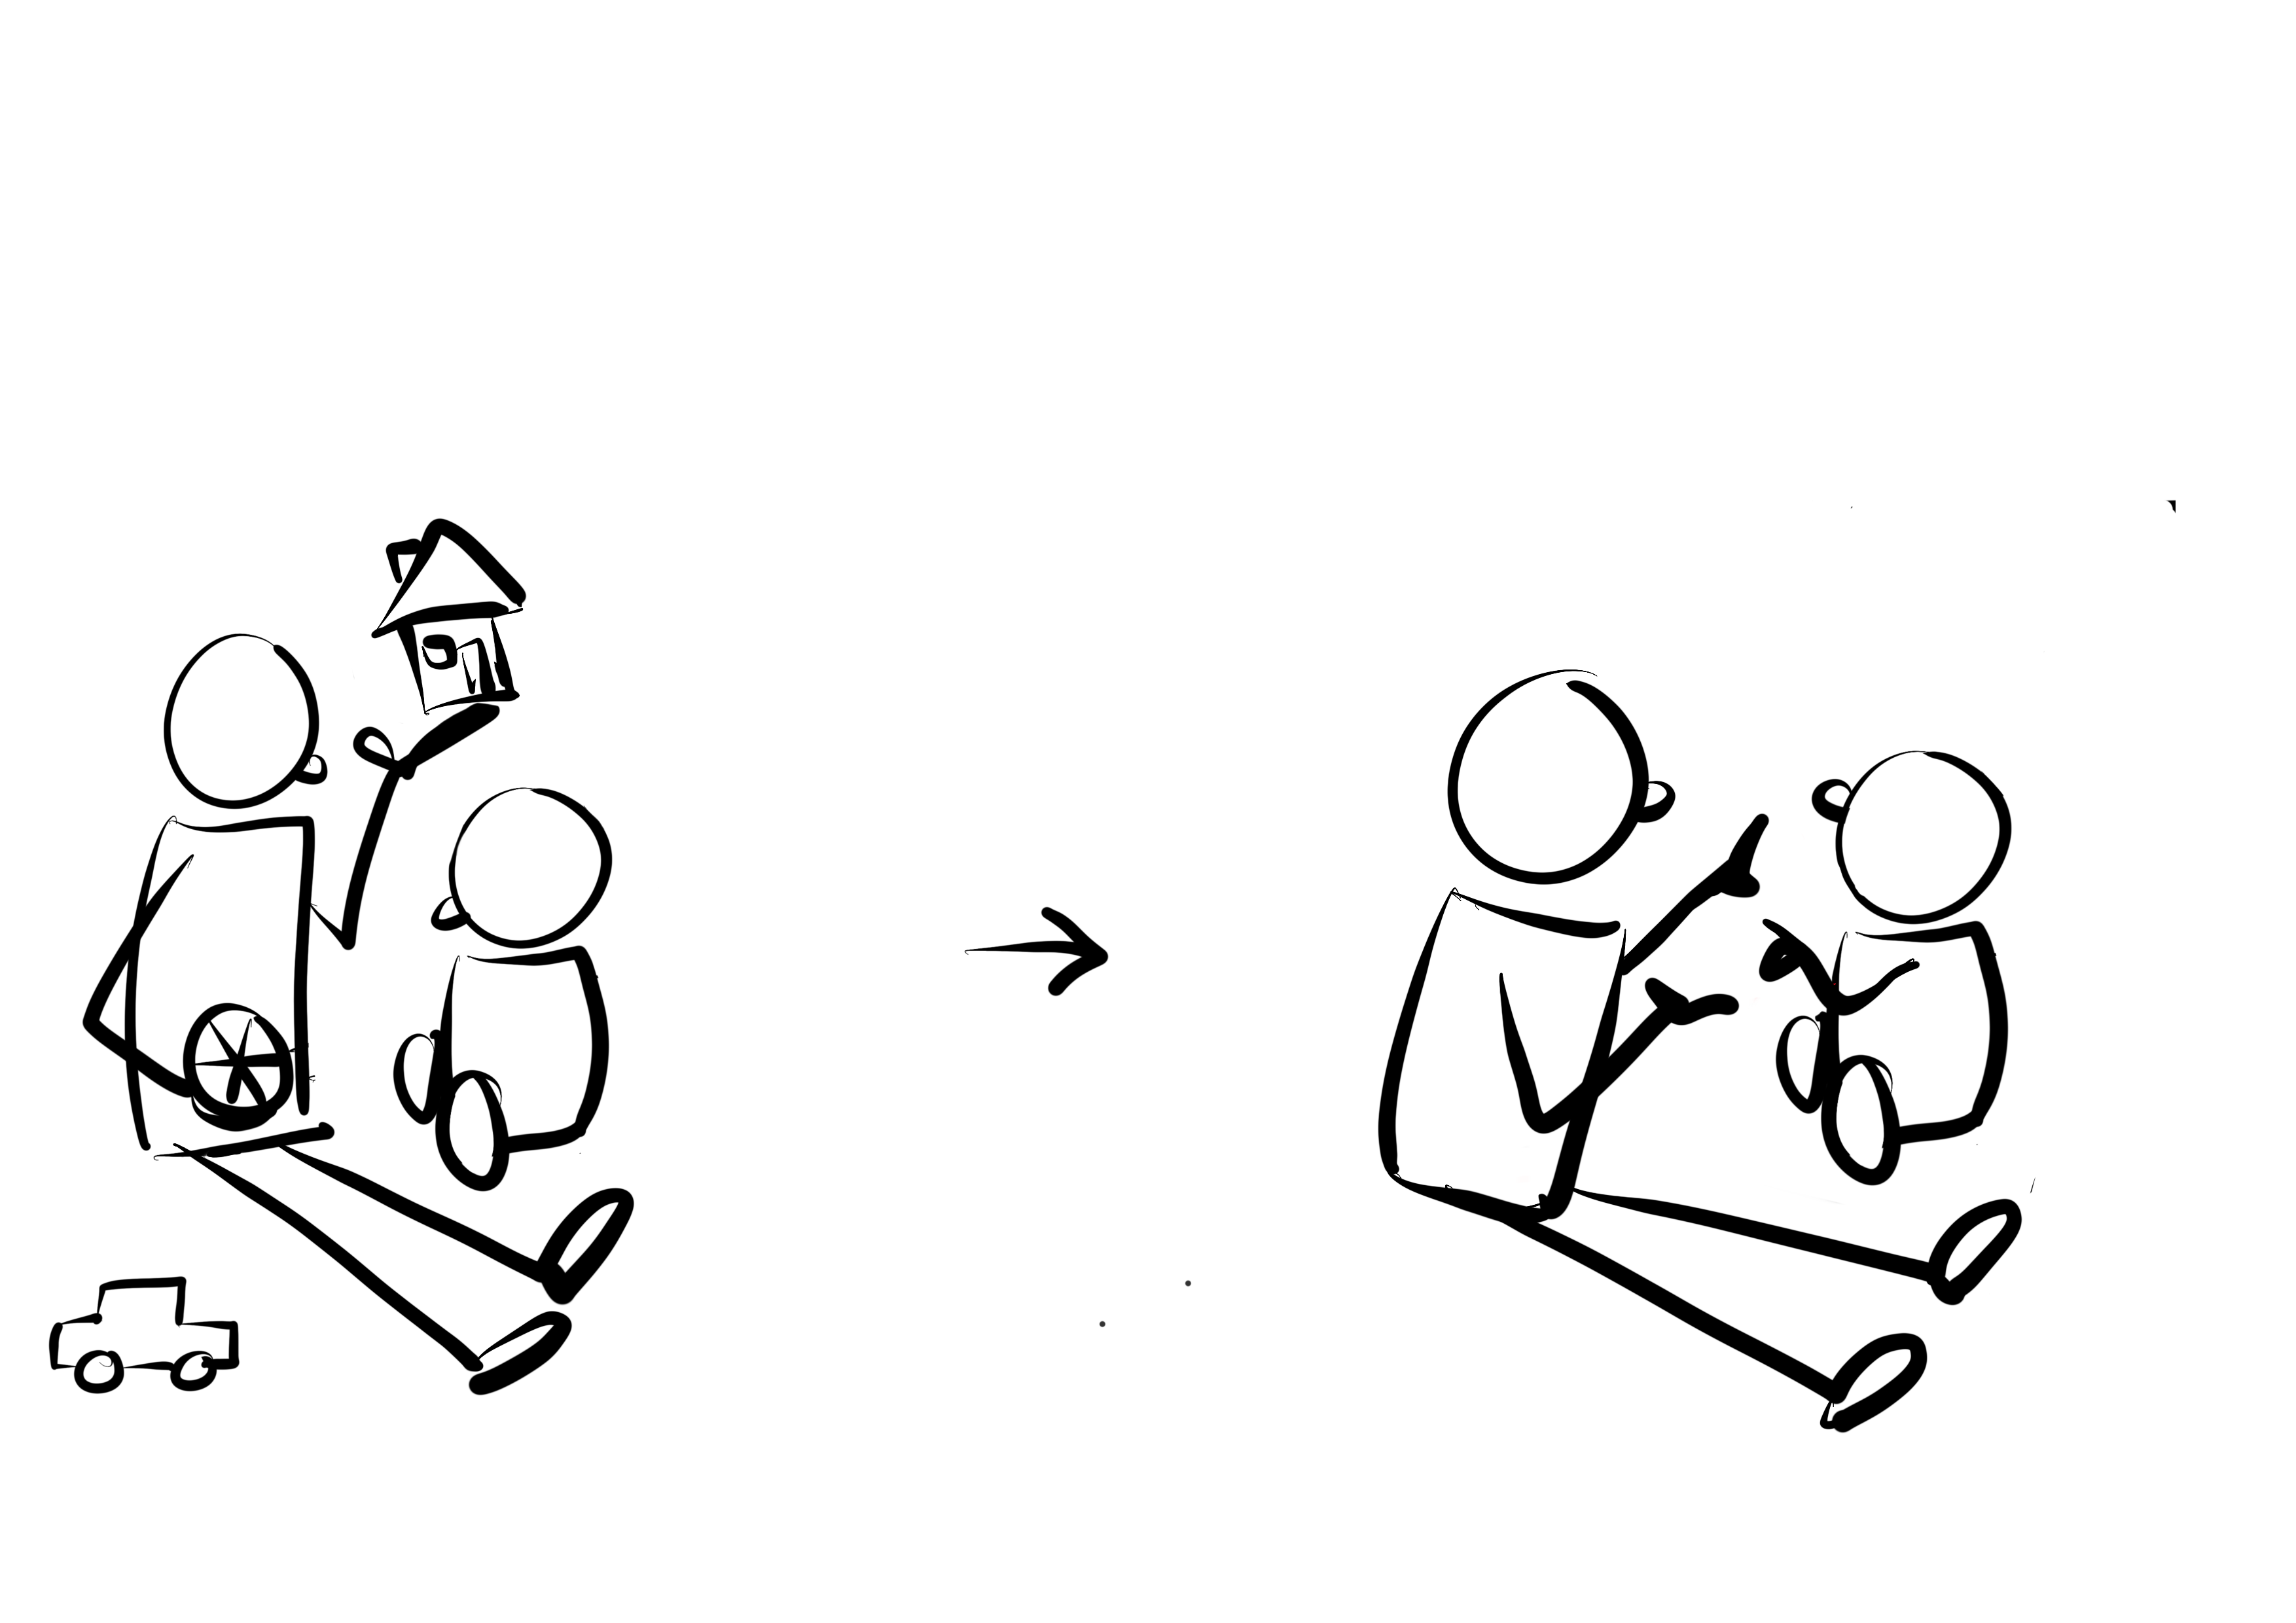 Illustrasjon av samspill mellom voksen og barn med og uten leker